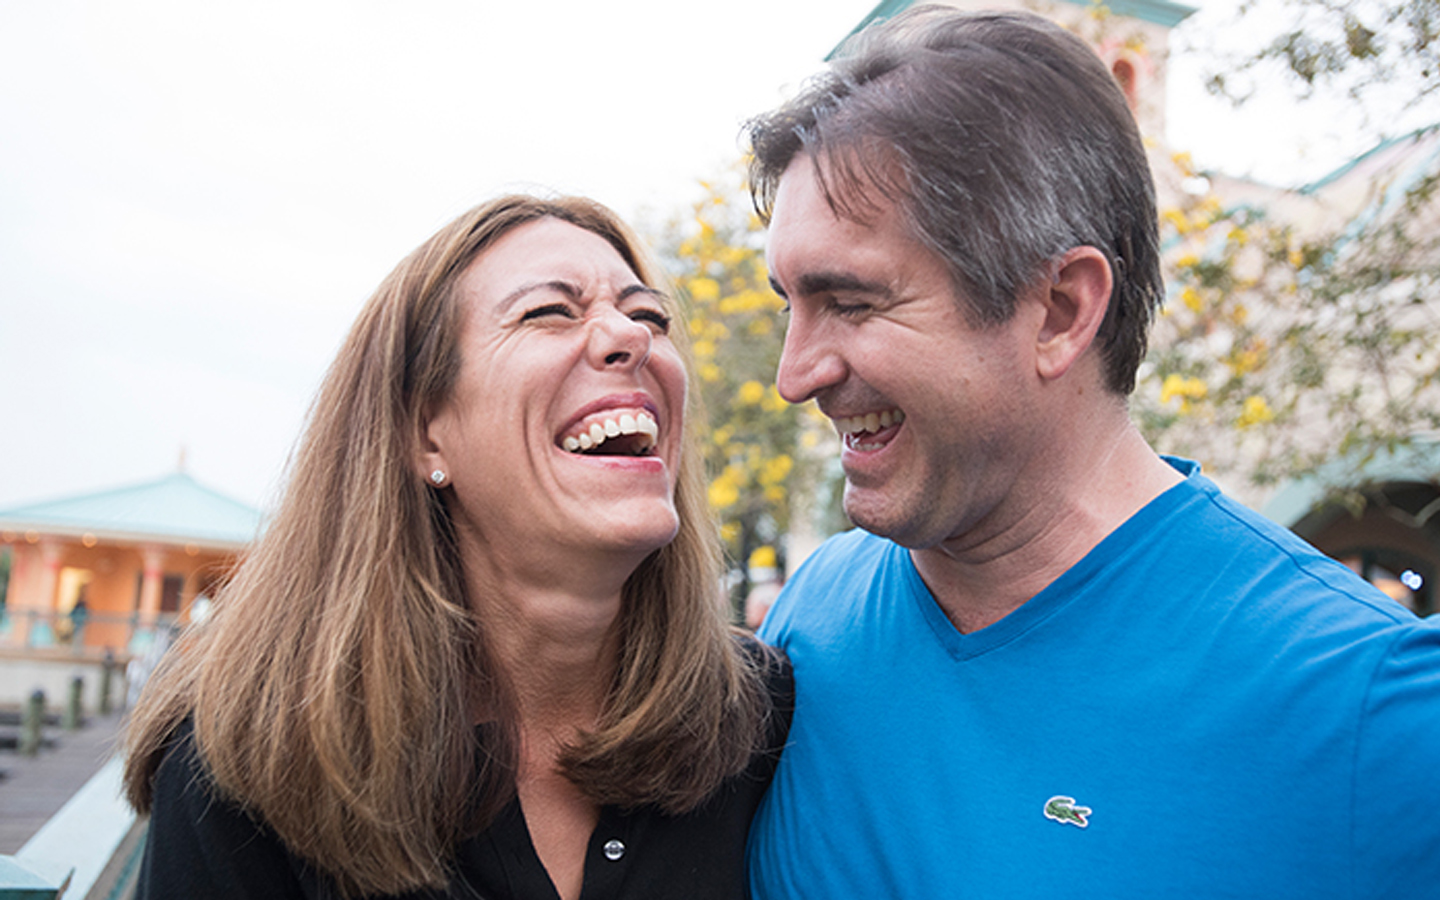 Moglie e marito ridono insieme in strada